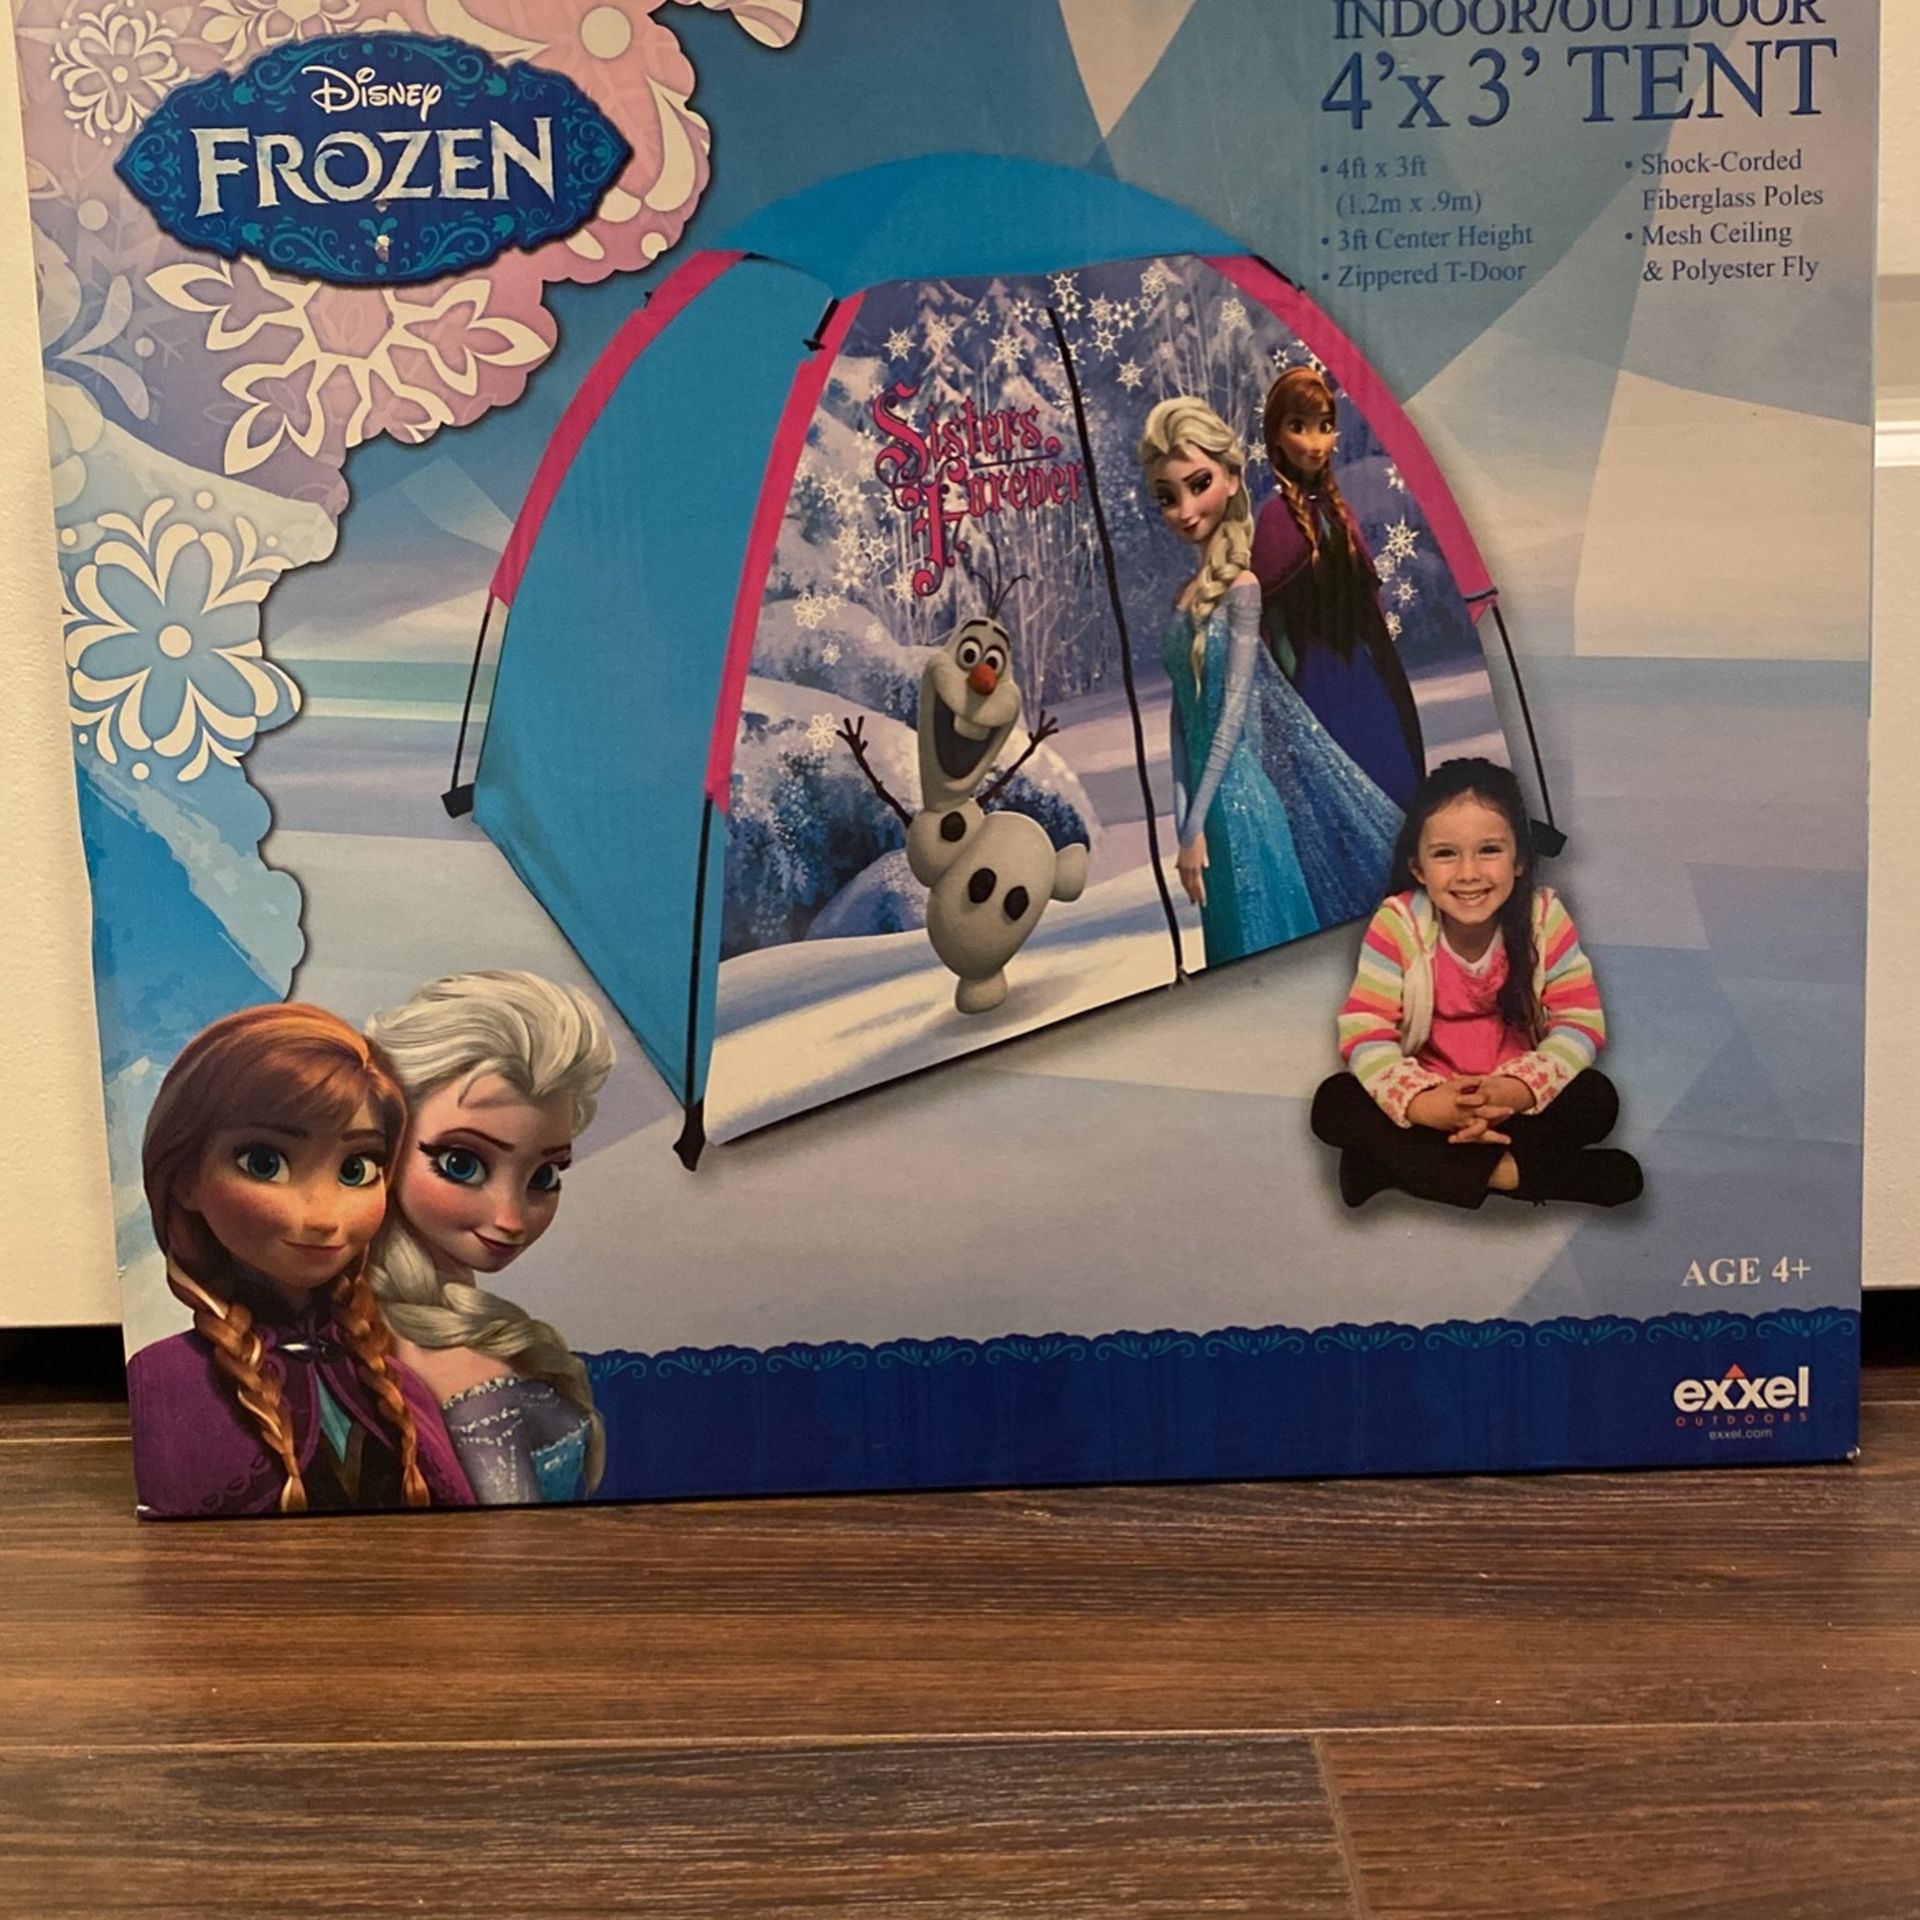 Disney Frozen Indoor/ Outdoor 4’x3’ Tent 